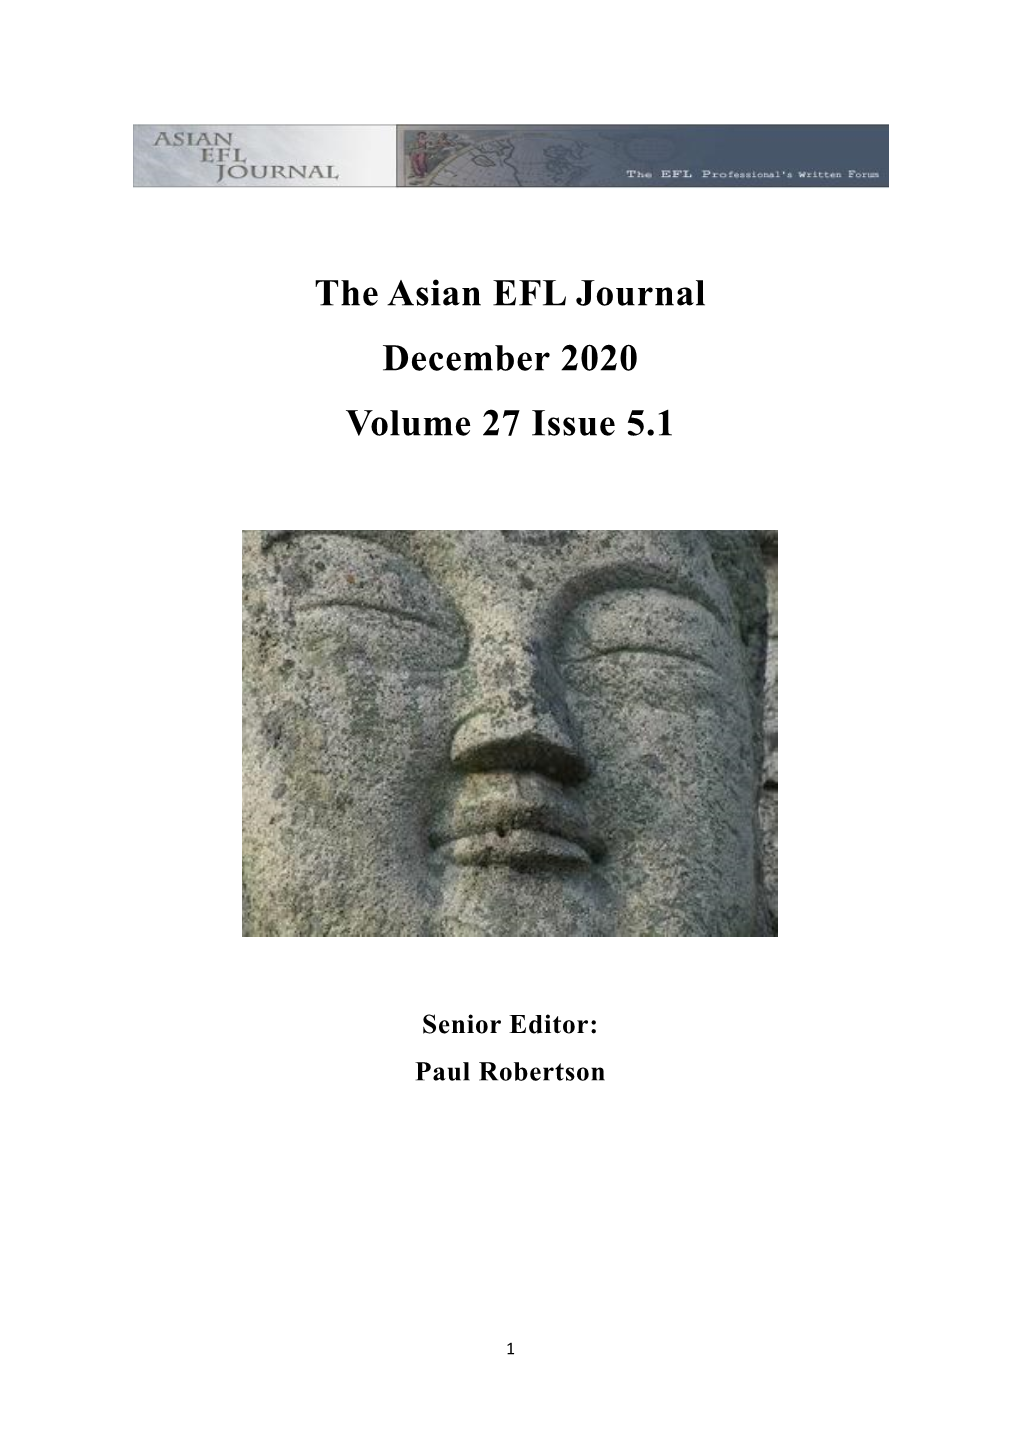 The Asian EFL Journal December 2020 Volume 27 Issue 5.1